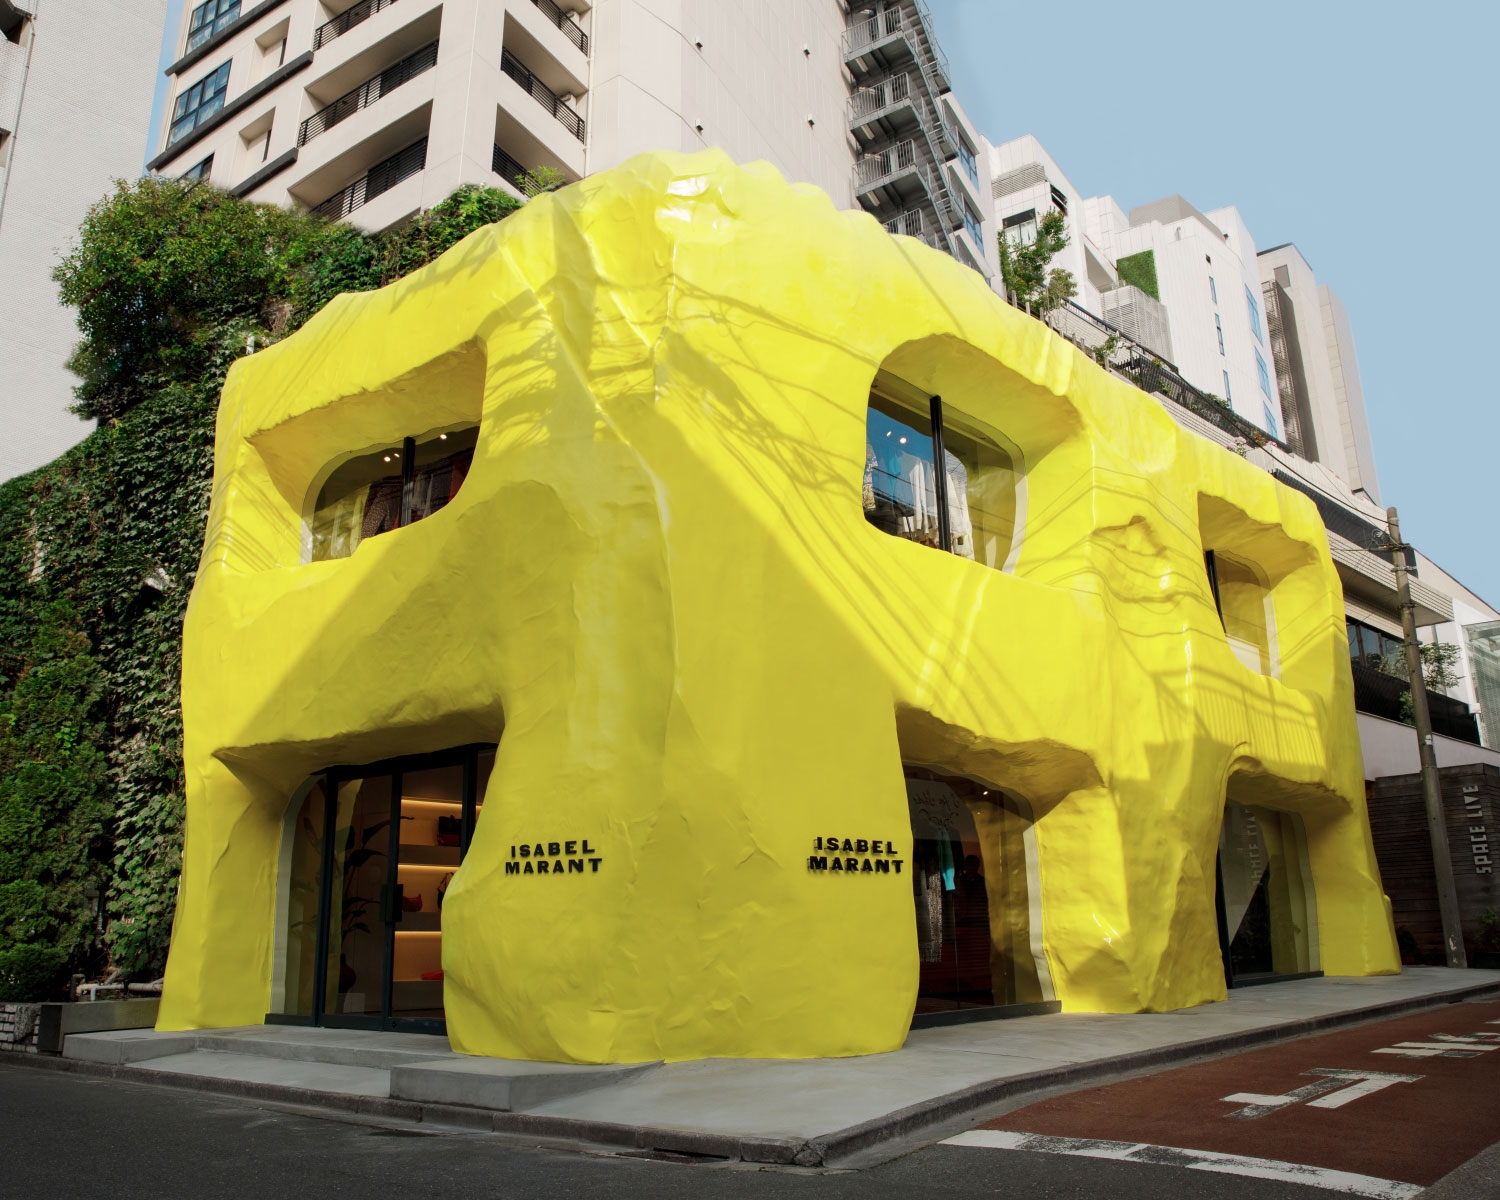  Isabel Marant flagship store Aoyama, Tokyo